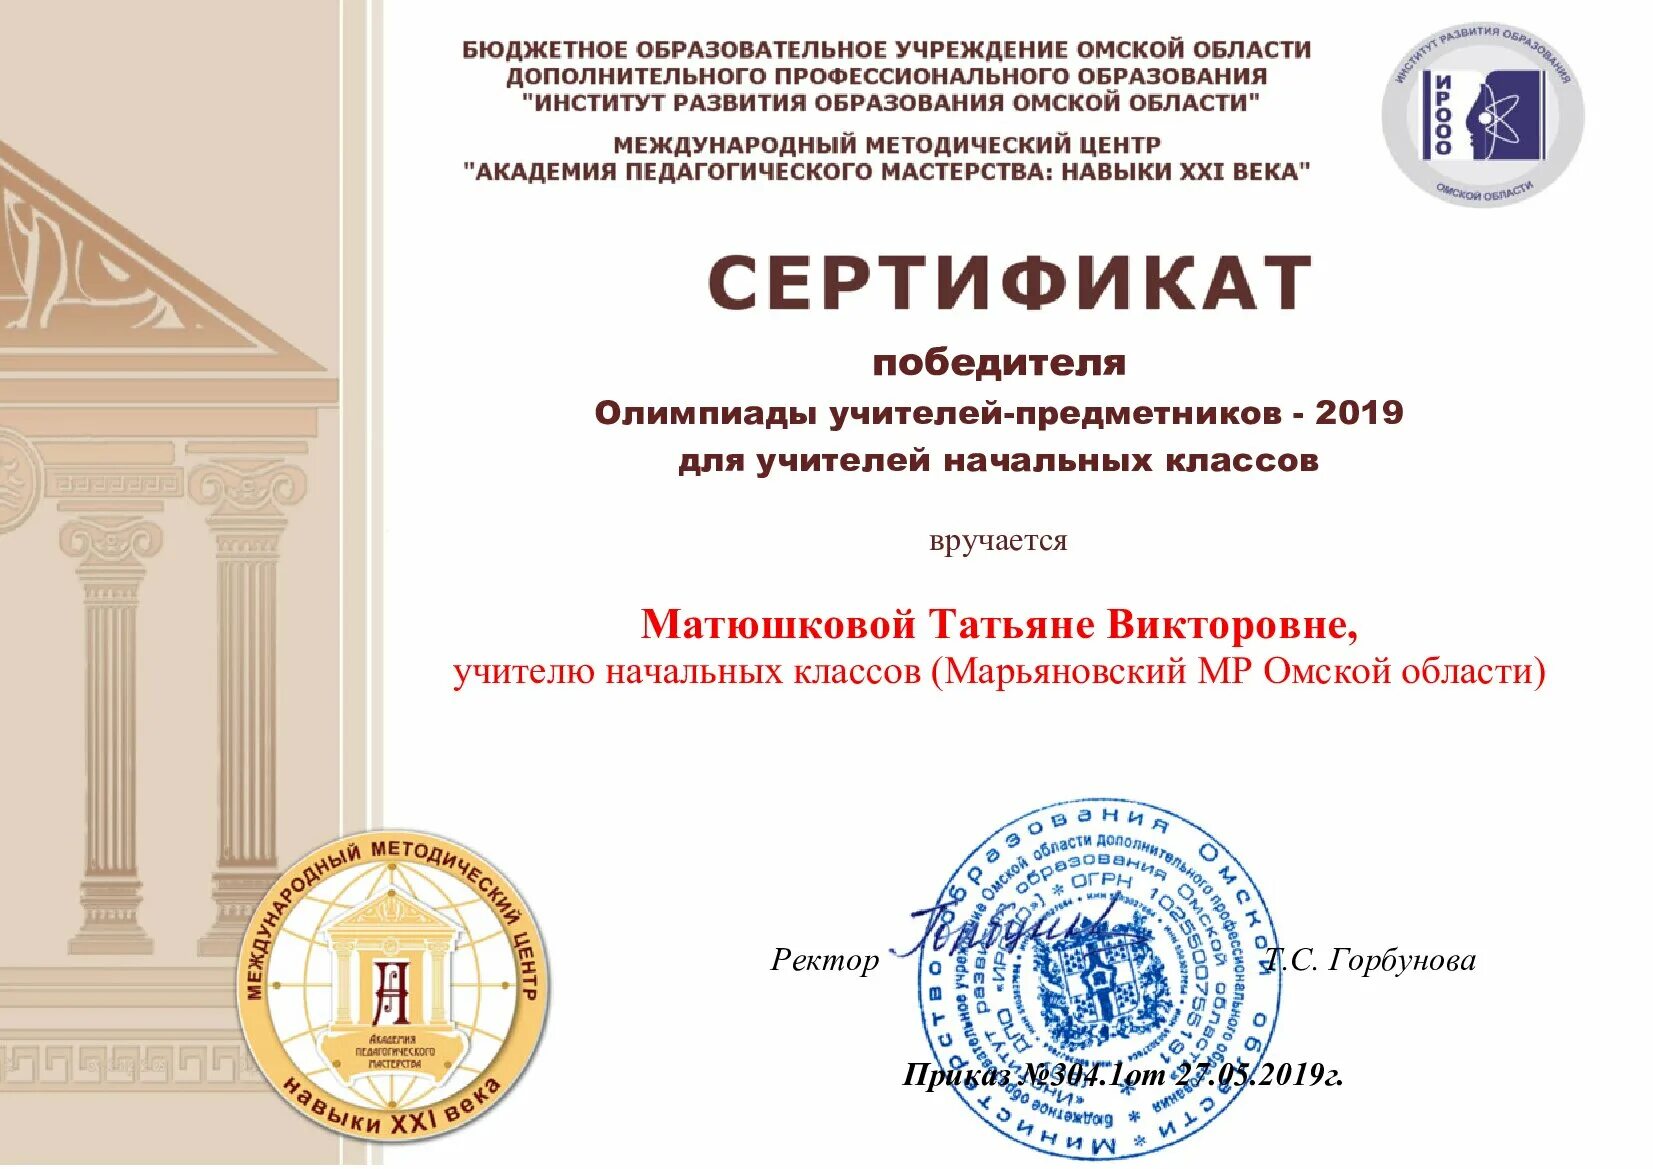 Конкурса Академия пед мастерства победитель. Бюджетные профессиональные образовательные учреждения омской области